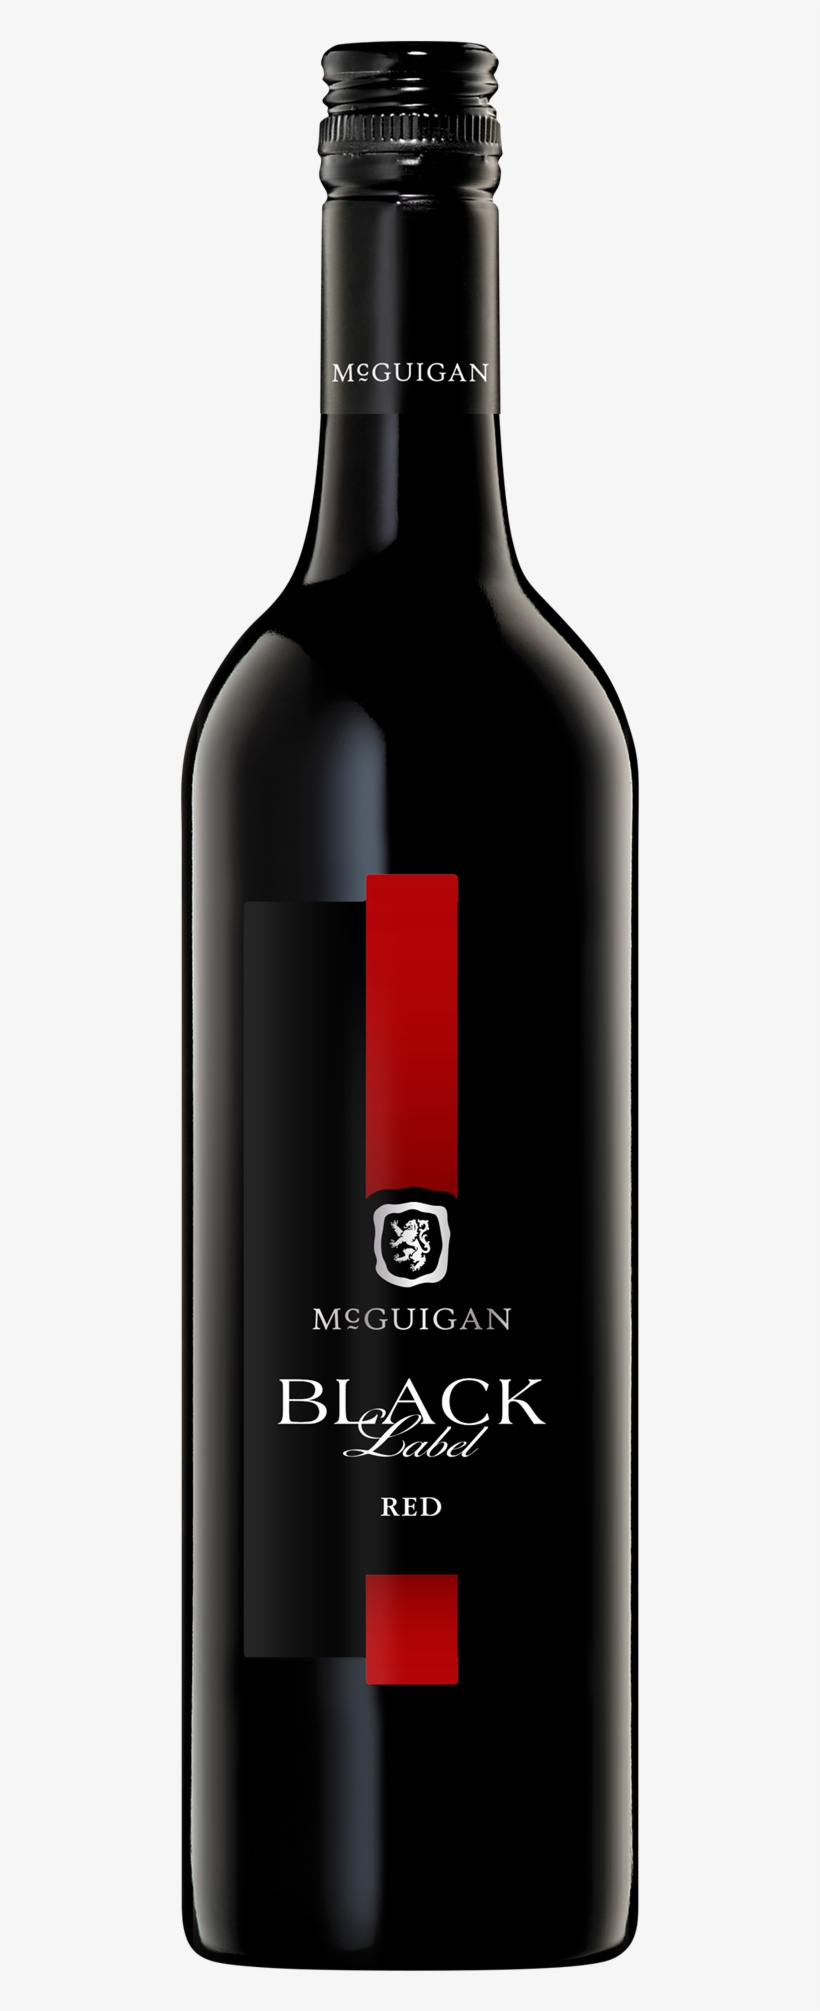 Mcguigan Black Label Red Bottle - Mcguigans Black Label Red Wine, transparent png #2298353